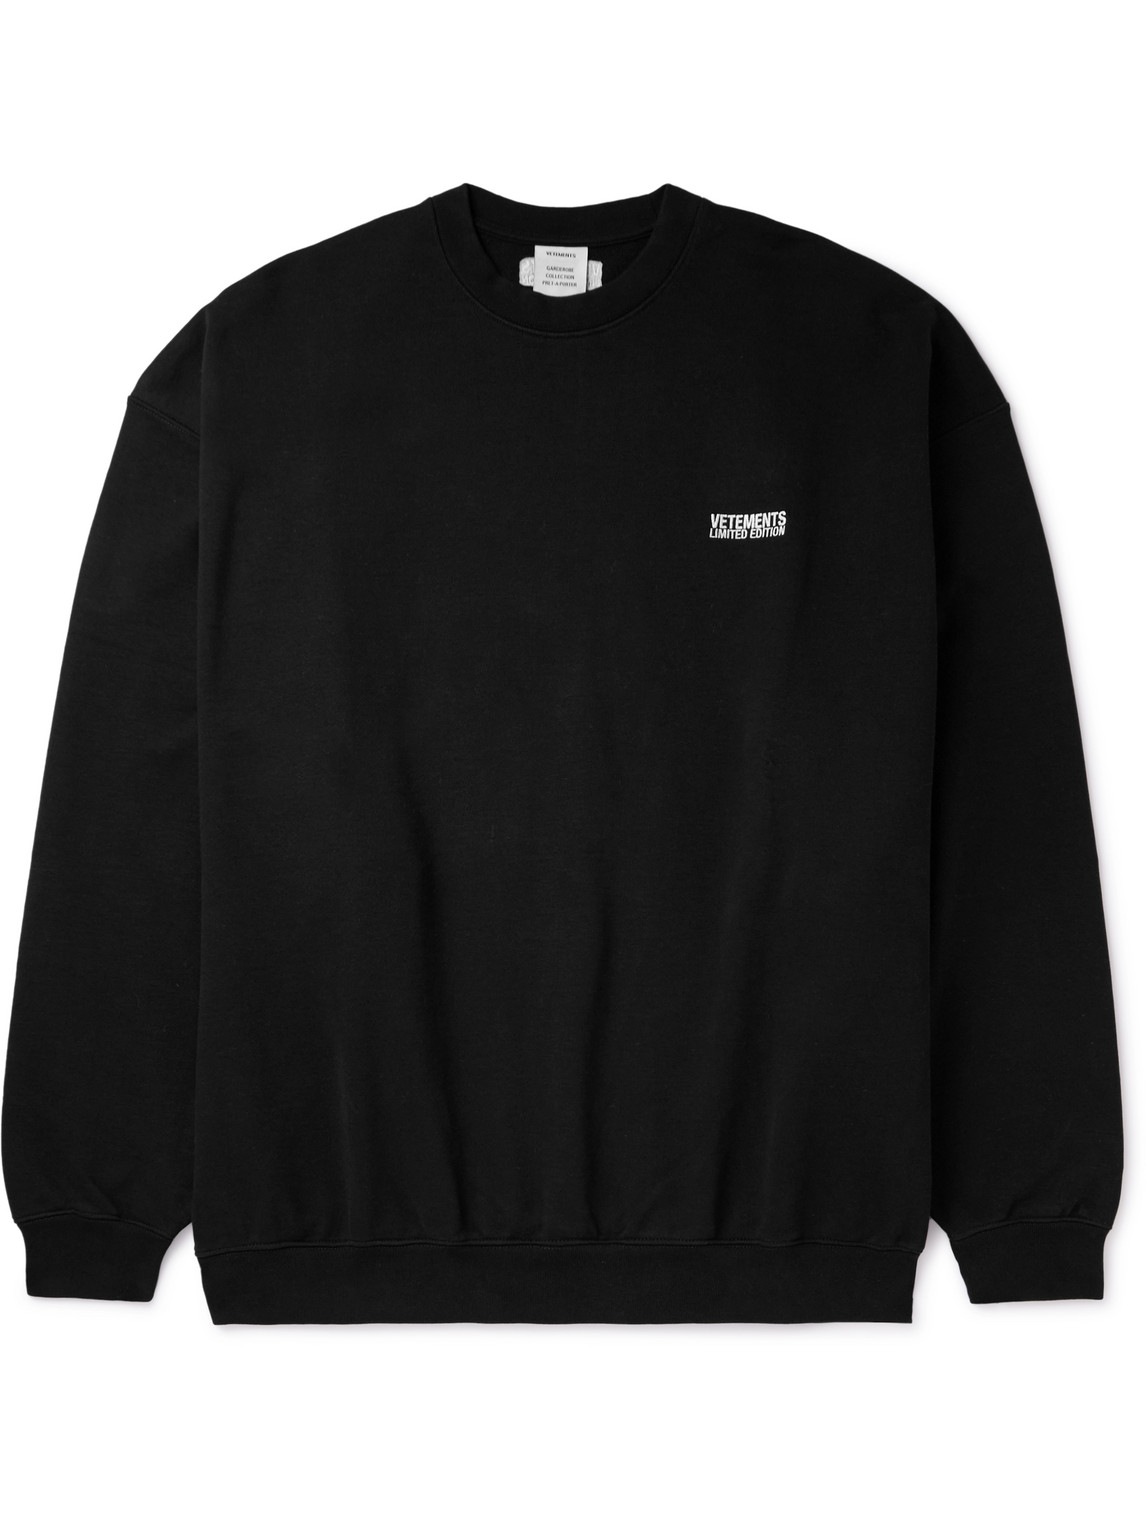 VETEMENTS - Logo-Embroidered Cotton-Blend Jersey Sweatshirt - Men - Black - S von VETEMENTS